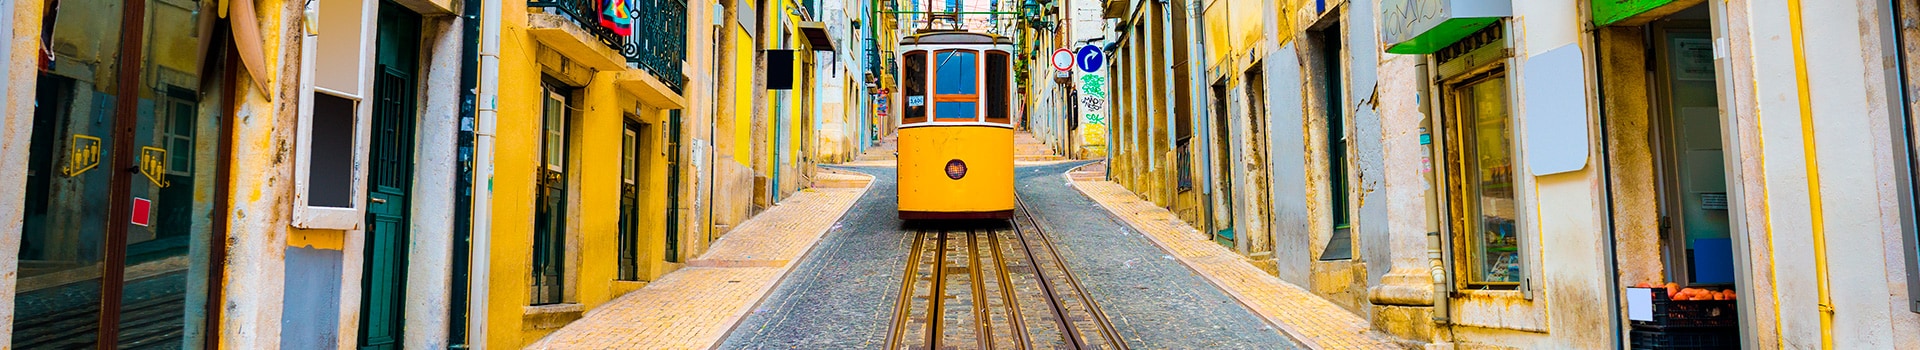 Madeira - Lissabon